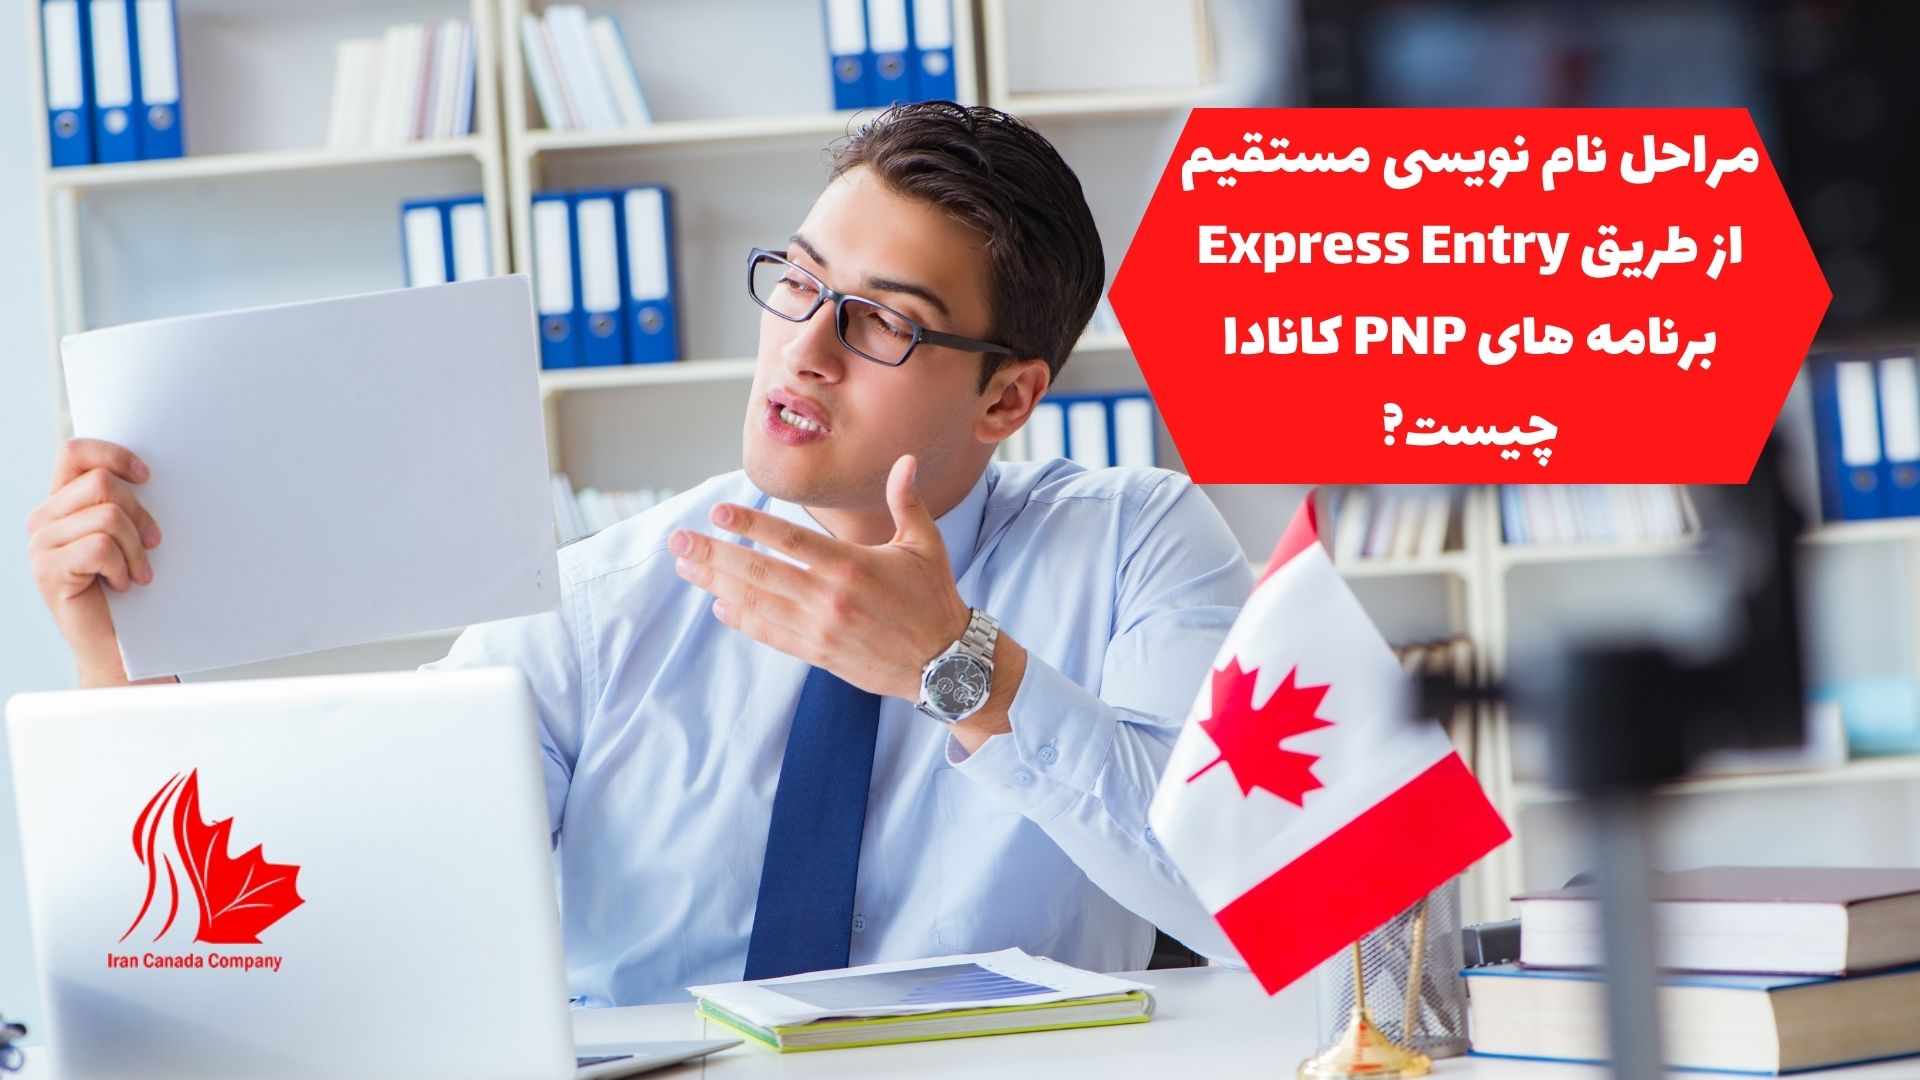 مراحل نام نویسی مستقیم از طریق Express Entry برنامه های PNP کانادا چیست؟